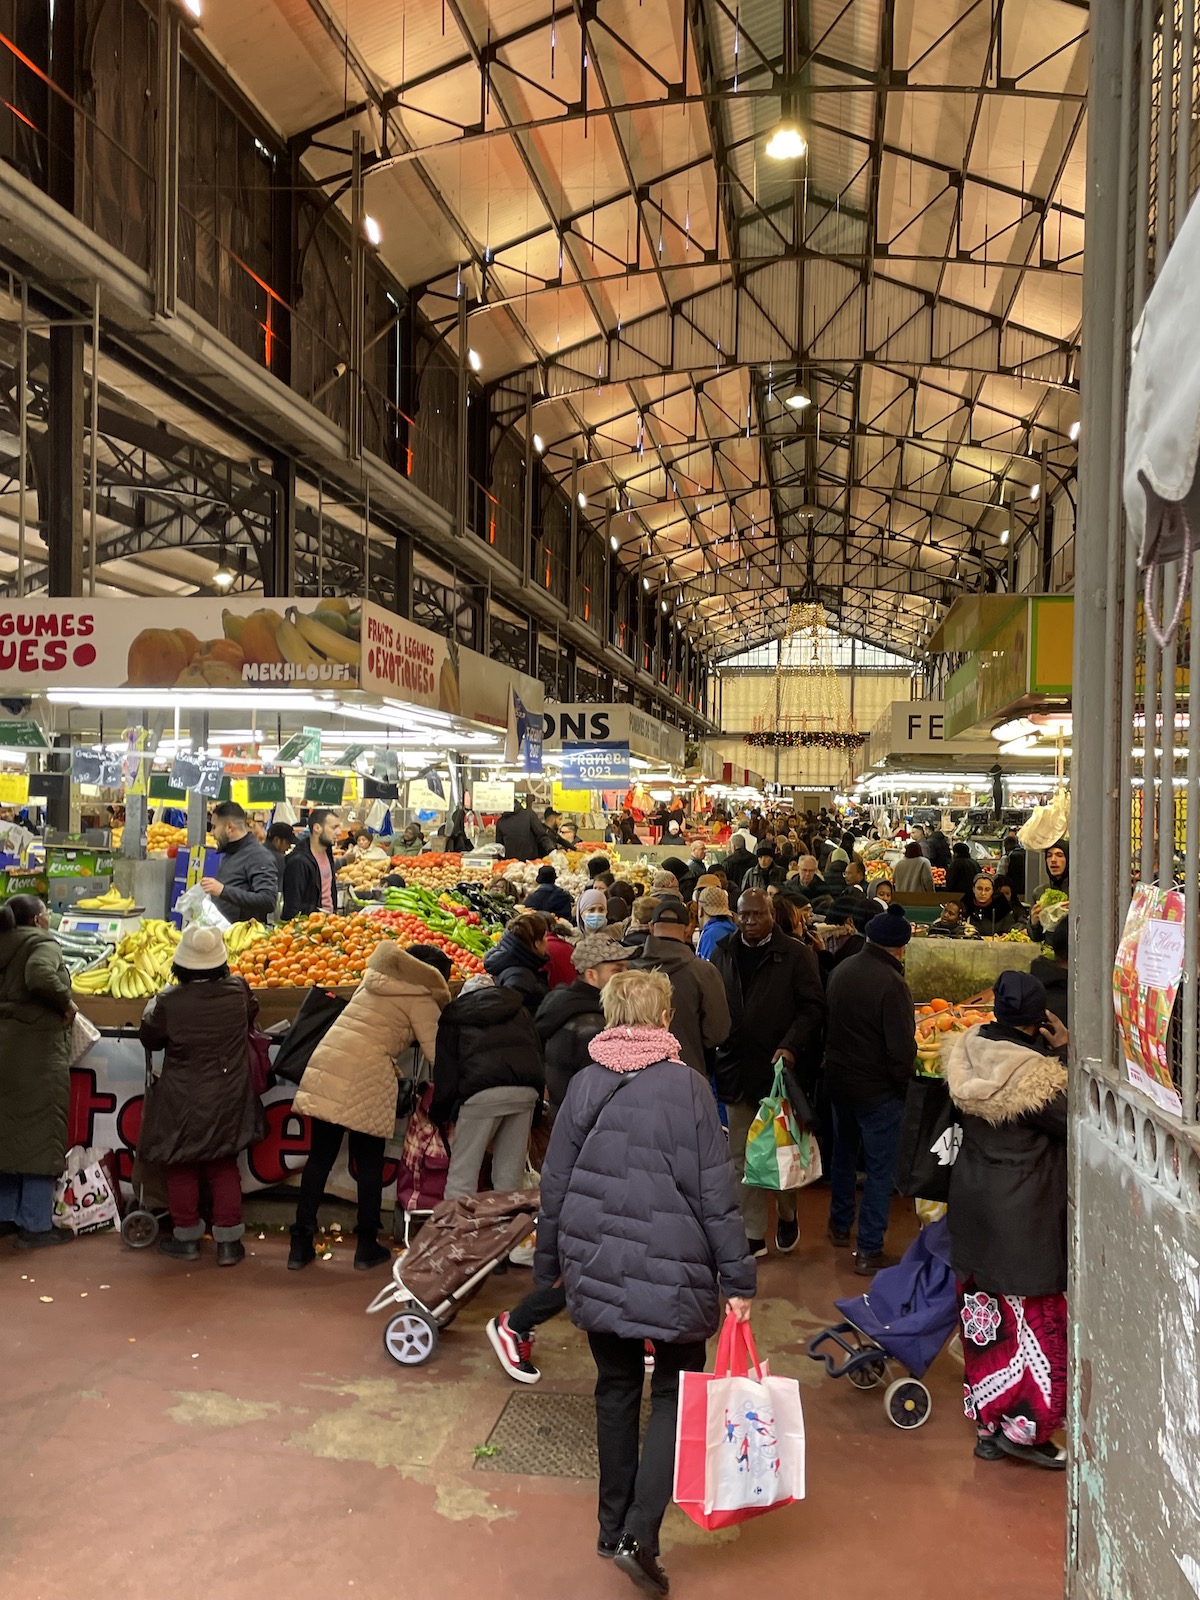 Le marché de Saint-Denis est le plus grand marché d'Île-de-France / © John Laurenson pour Enlarge your Paris